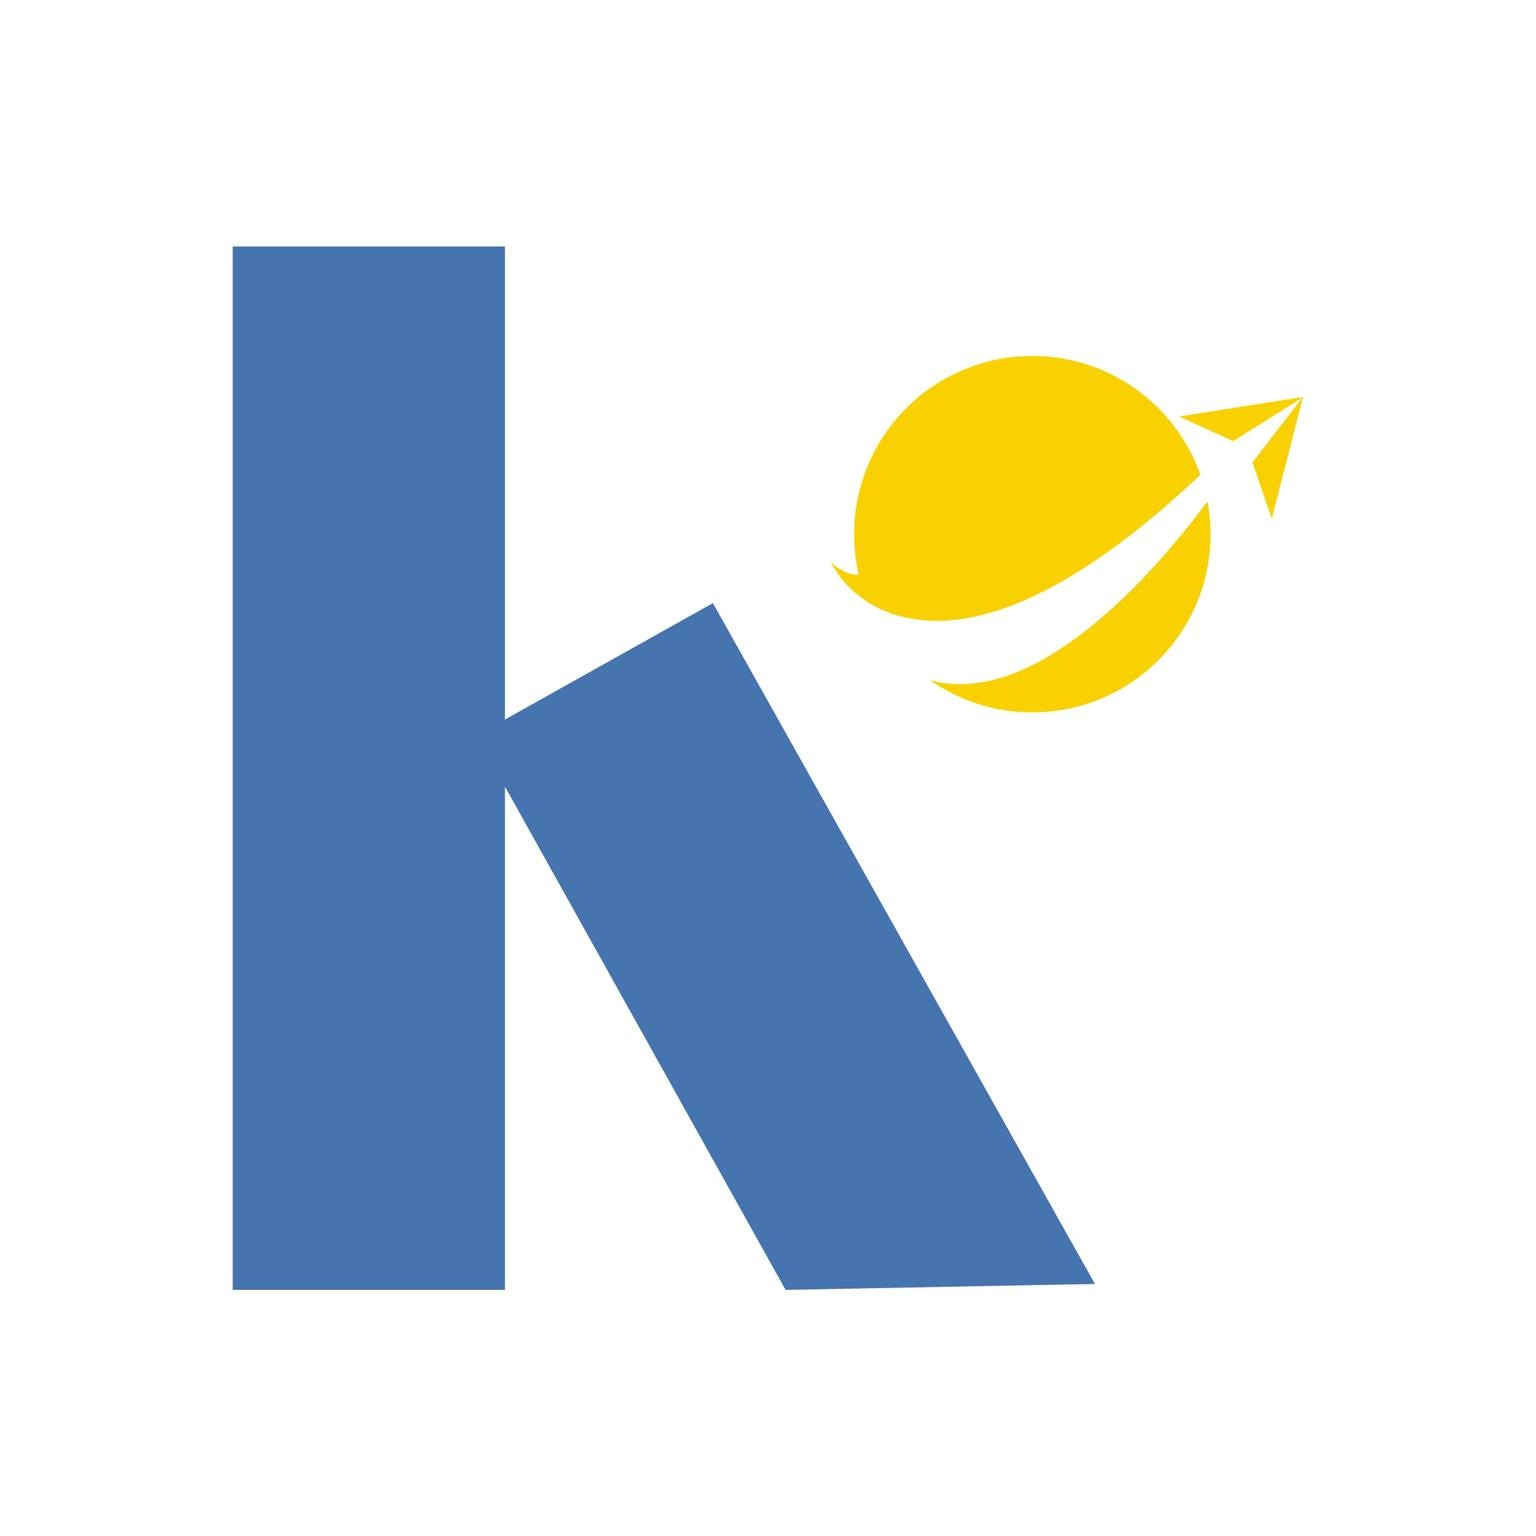 Logo Công ty Cổ phần KVN Logistics